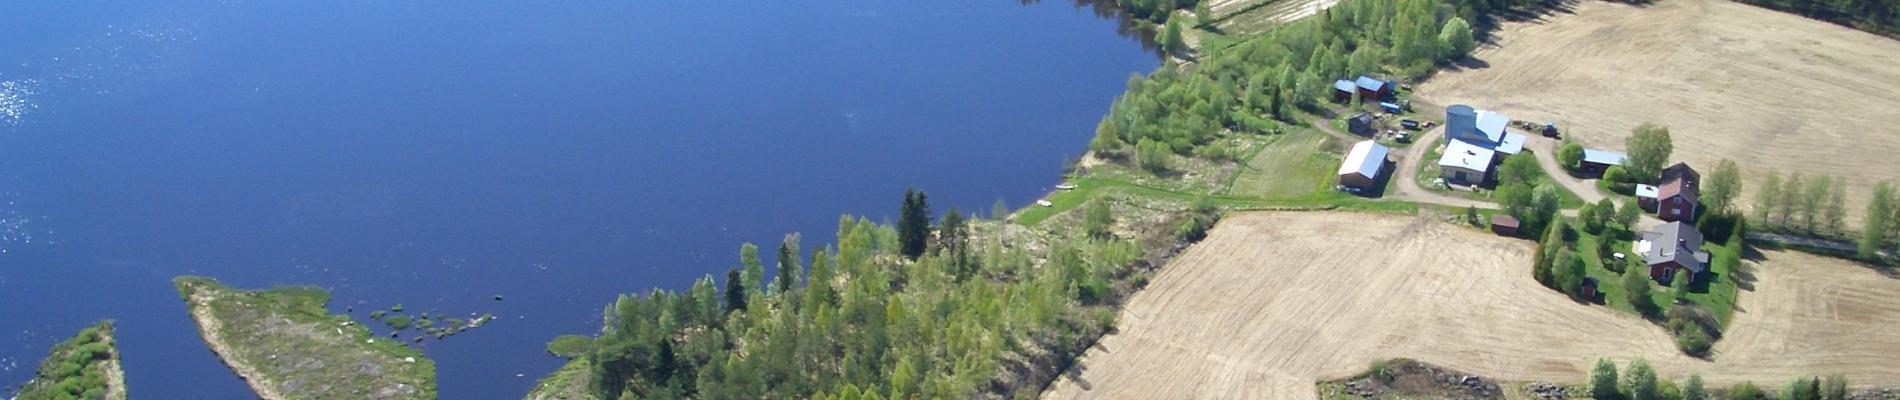 Ilmakuva Piipsjärvi